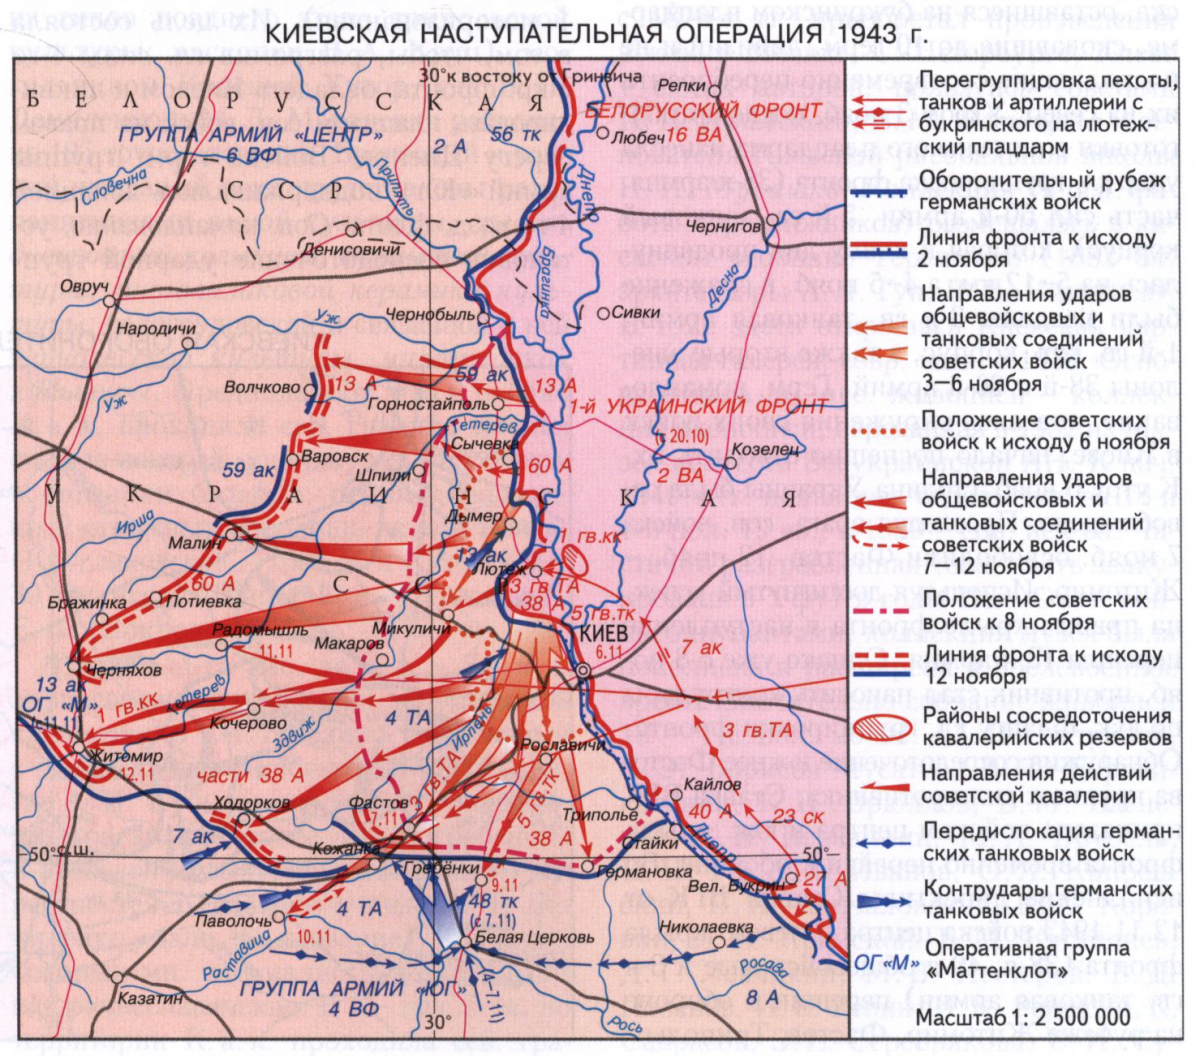 Киевские операции 1943